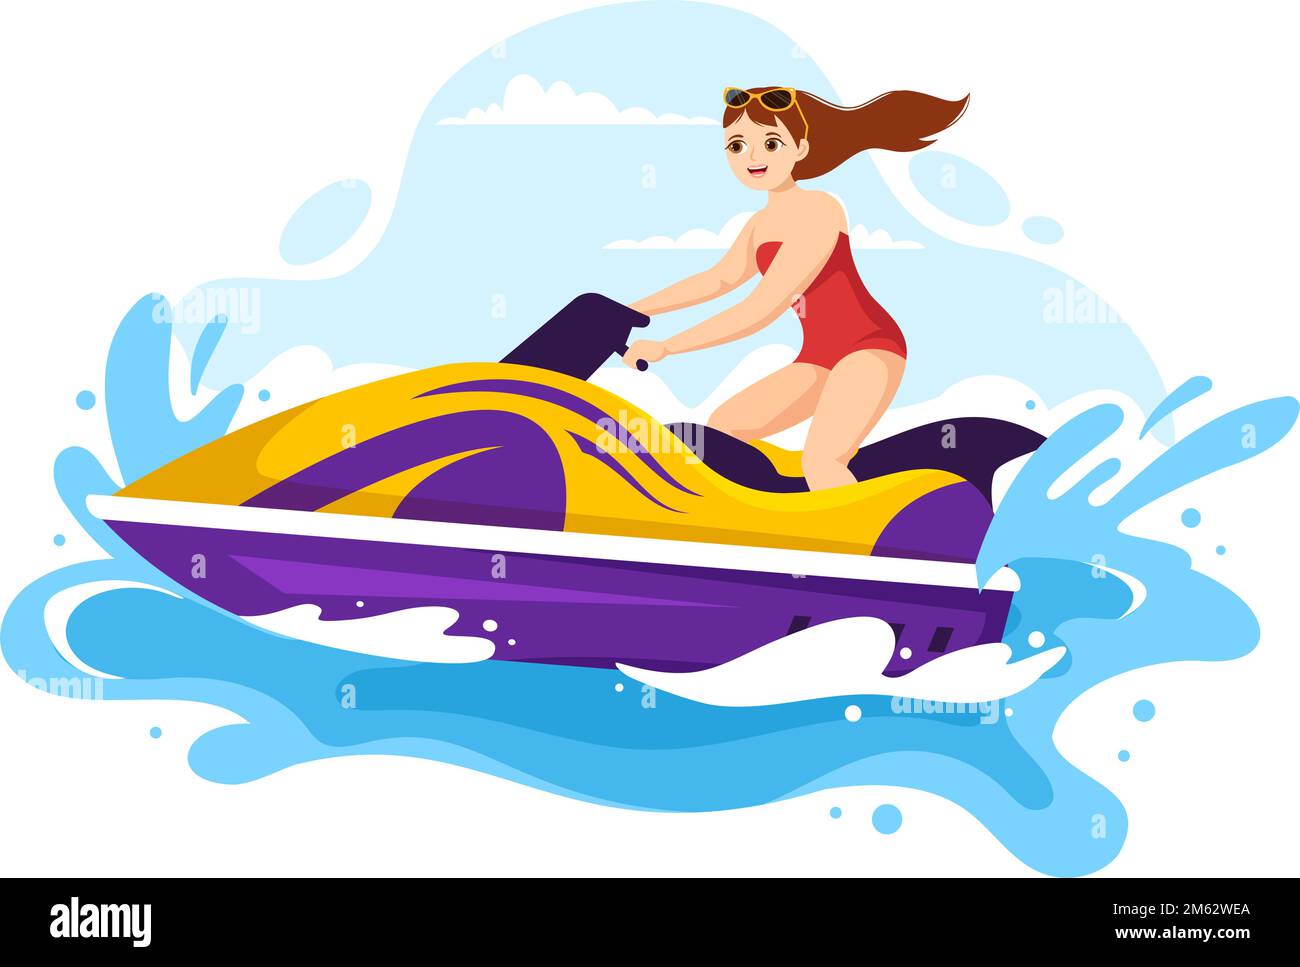 Leute fahren Jet Ski Illustration Sommerurlaub Erholung, Extreme Wassersport und Resort Beach Aktivität in Hand Drawn Flat Cartoon Template Stock Vektor